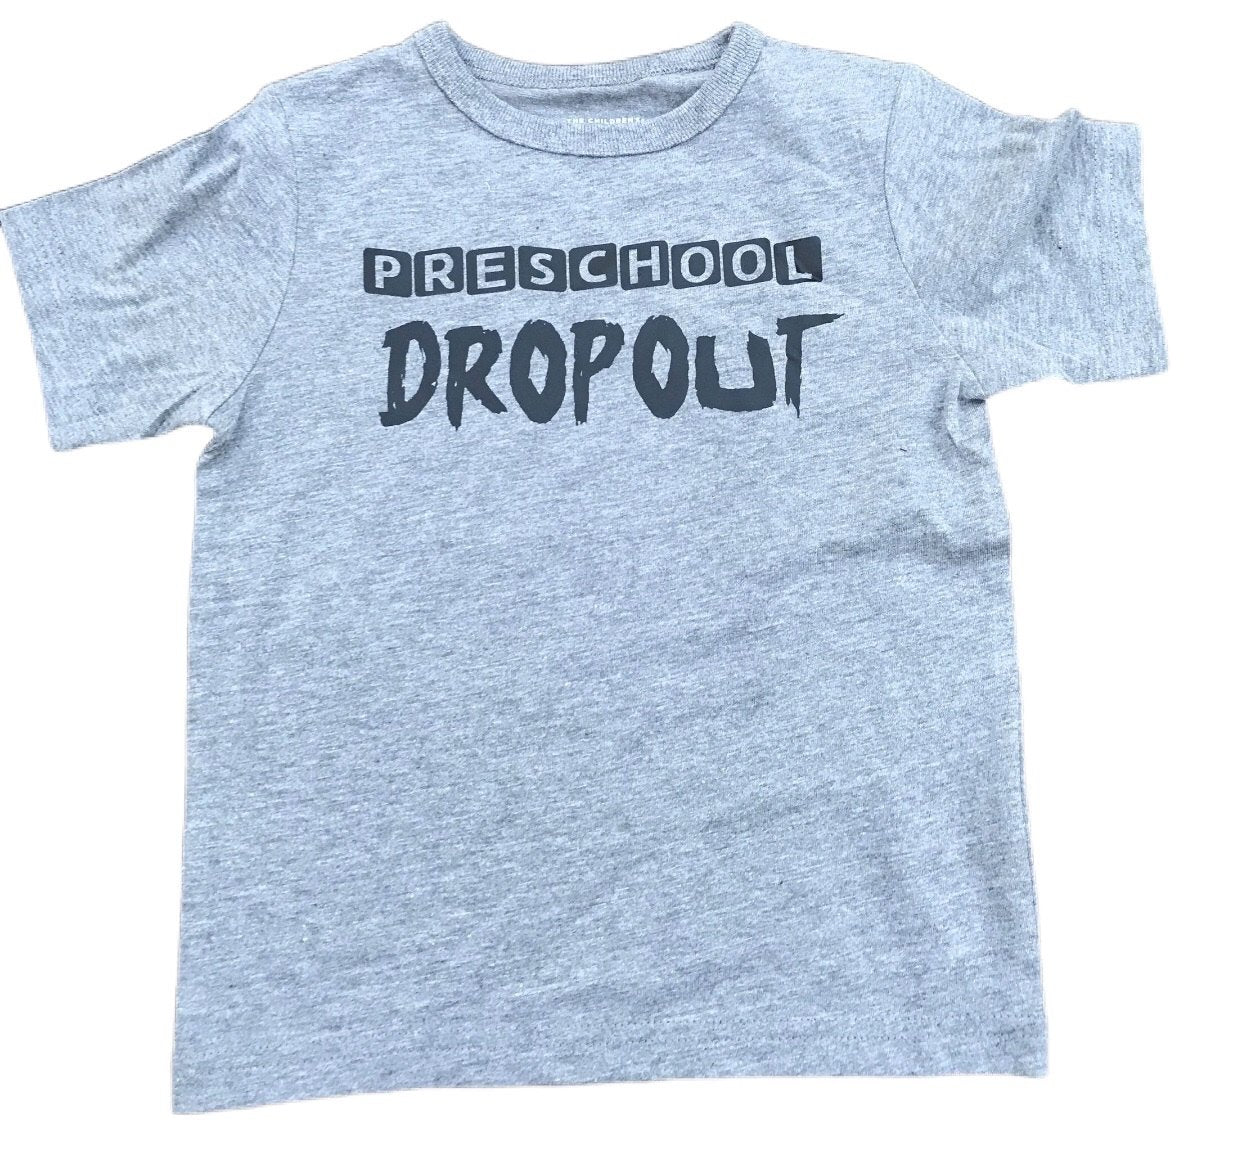 Preschool Dropout Shirt